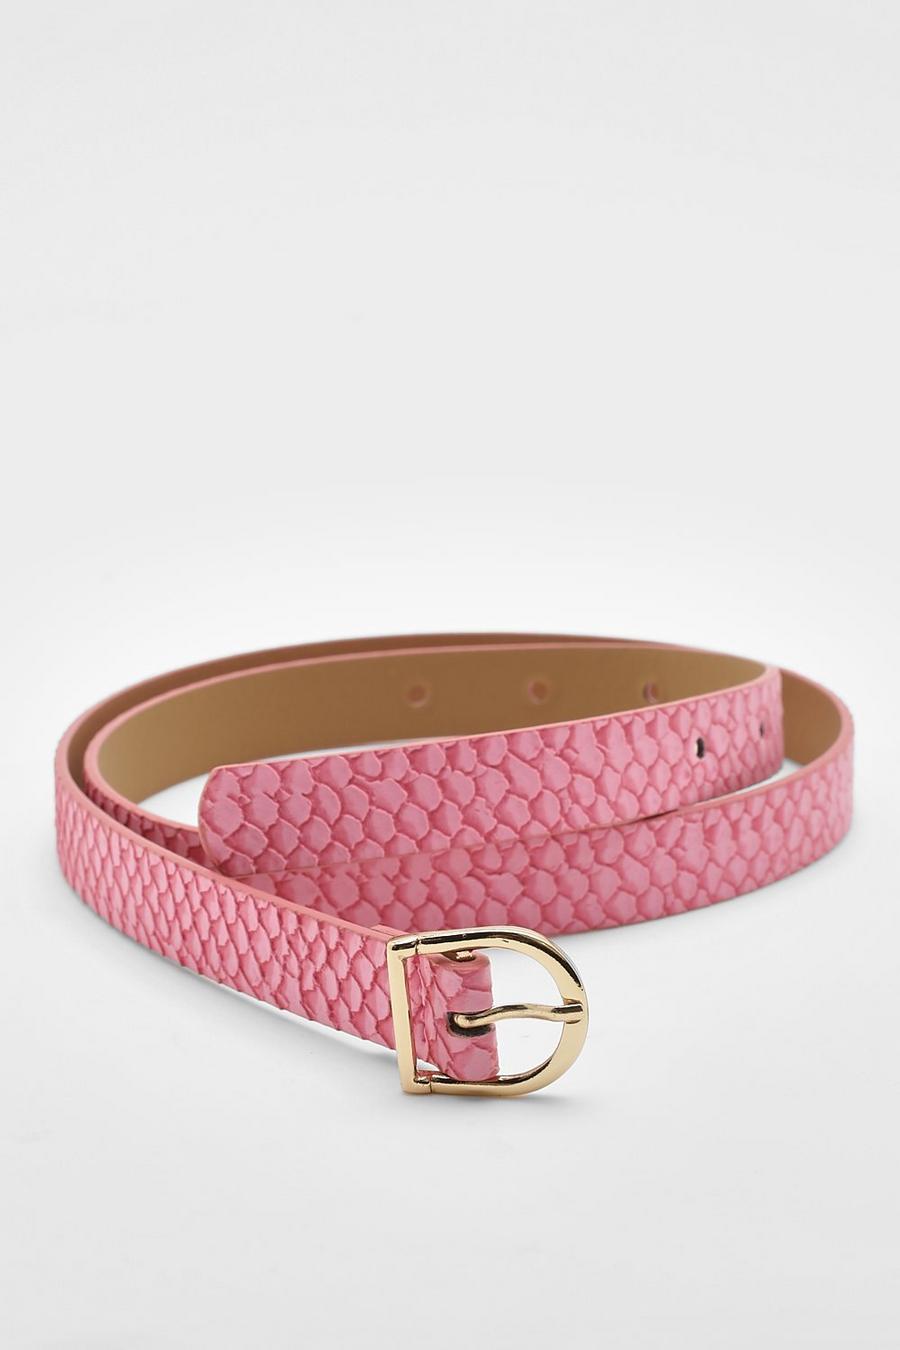 Cinturón de cuero sintético efecto serpiente, Pink rosa image number 1